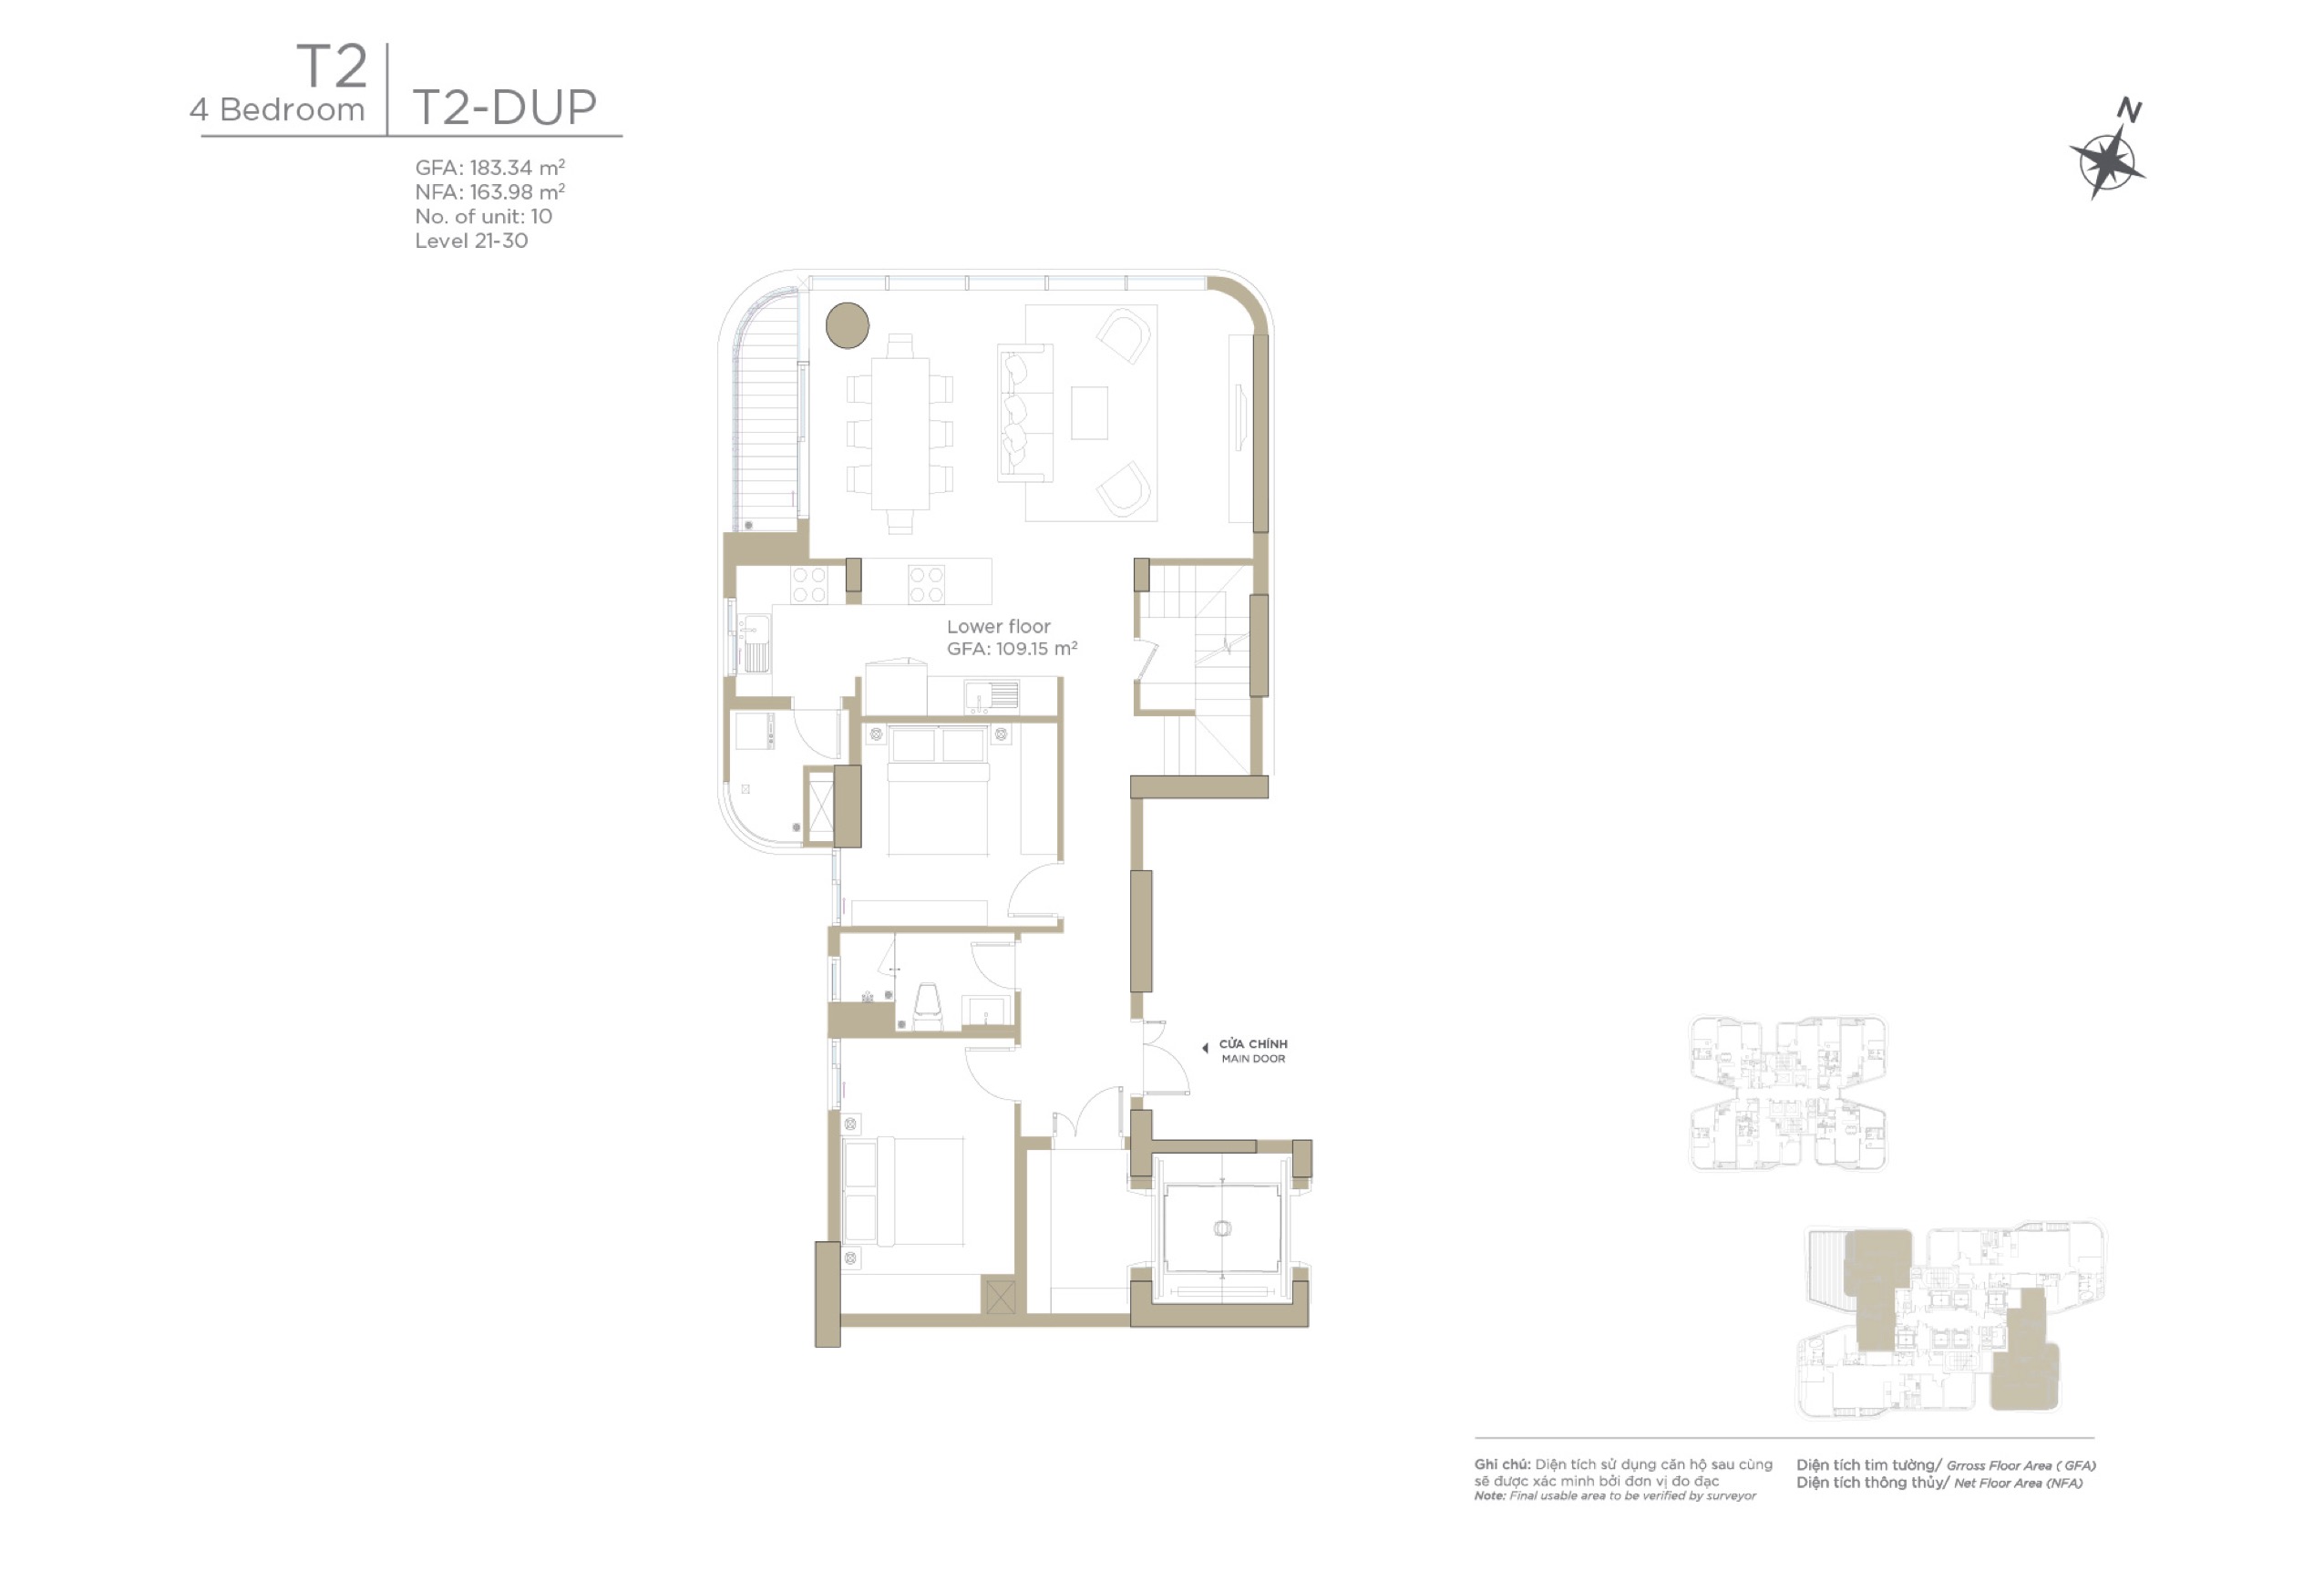 Mặt bằng layout căn hộ Duplex 4 phòng ngủ Zeit River Thủ Thiêm tháp T2 - bán cho thuê căn hộ Duplex 4 phòng ngủ Zeit River Thủ thiêm tháp T2